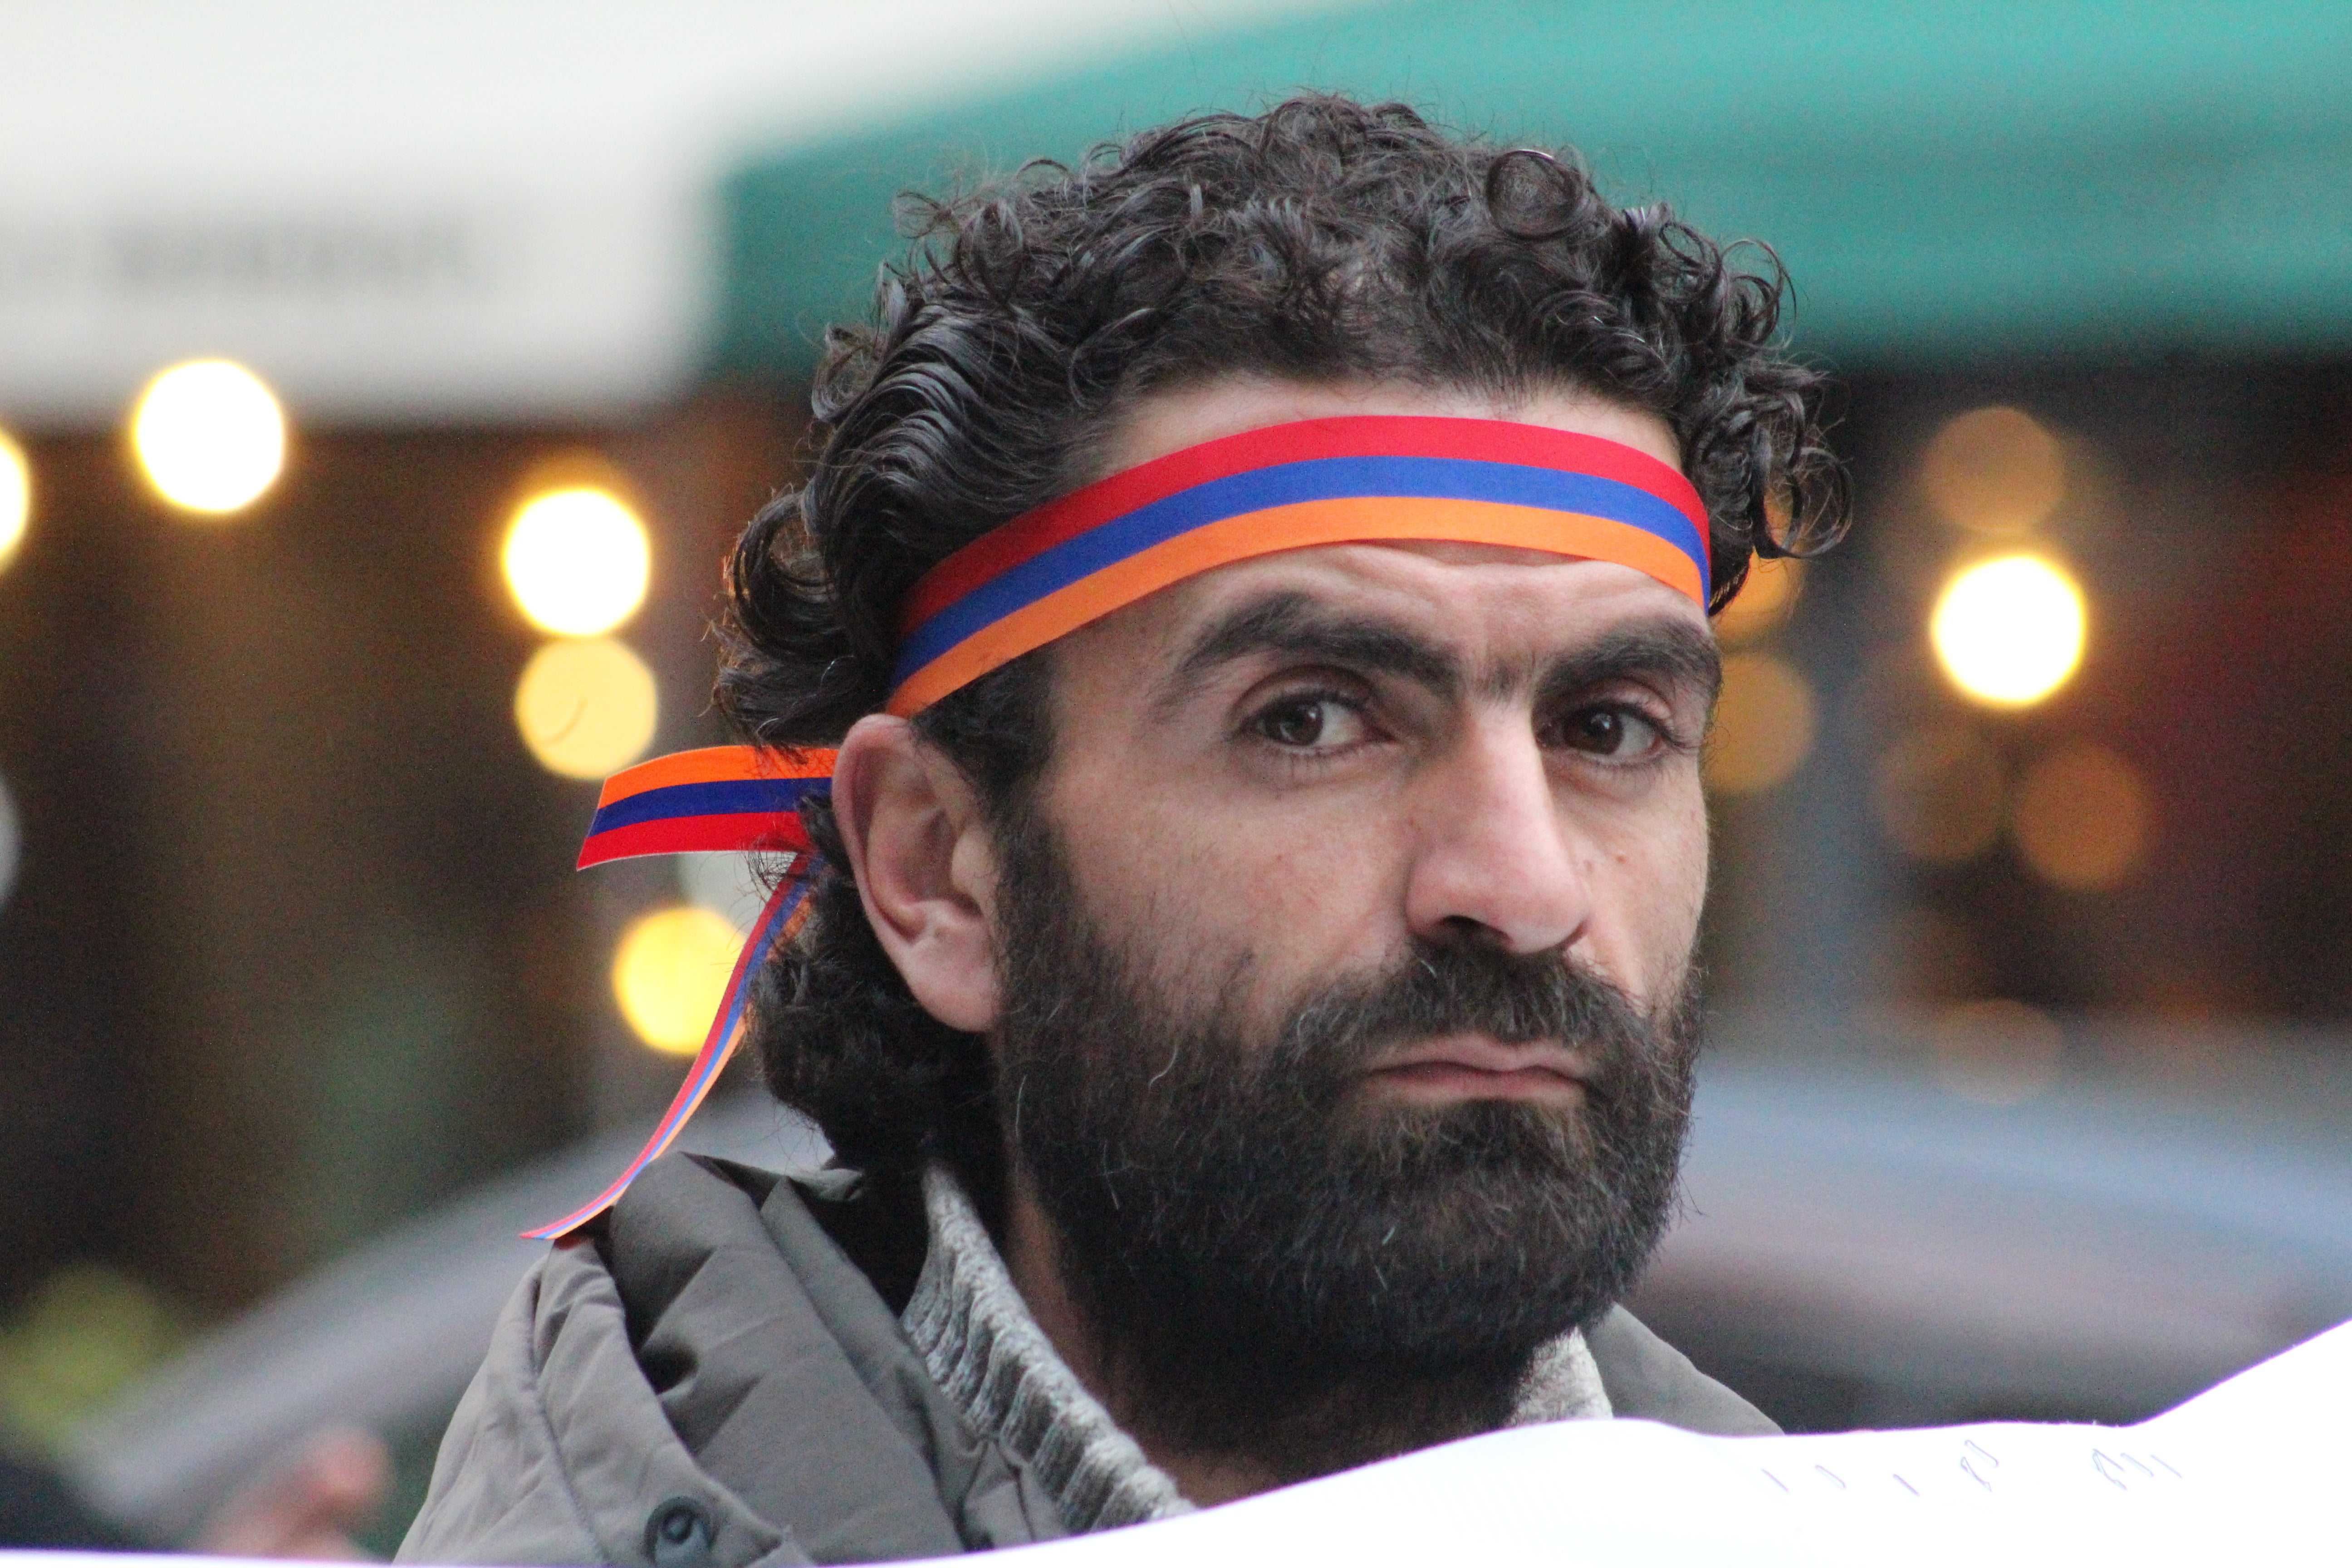 Участник митинга "Национально-демократического полюса" в Ереване 20 марта 2021 года. Фото Тиграна Петросяна для "Кавказского узла"